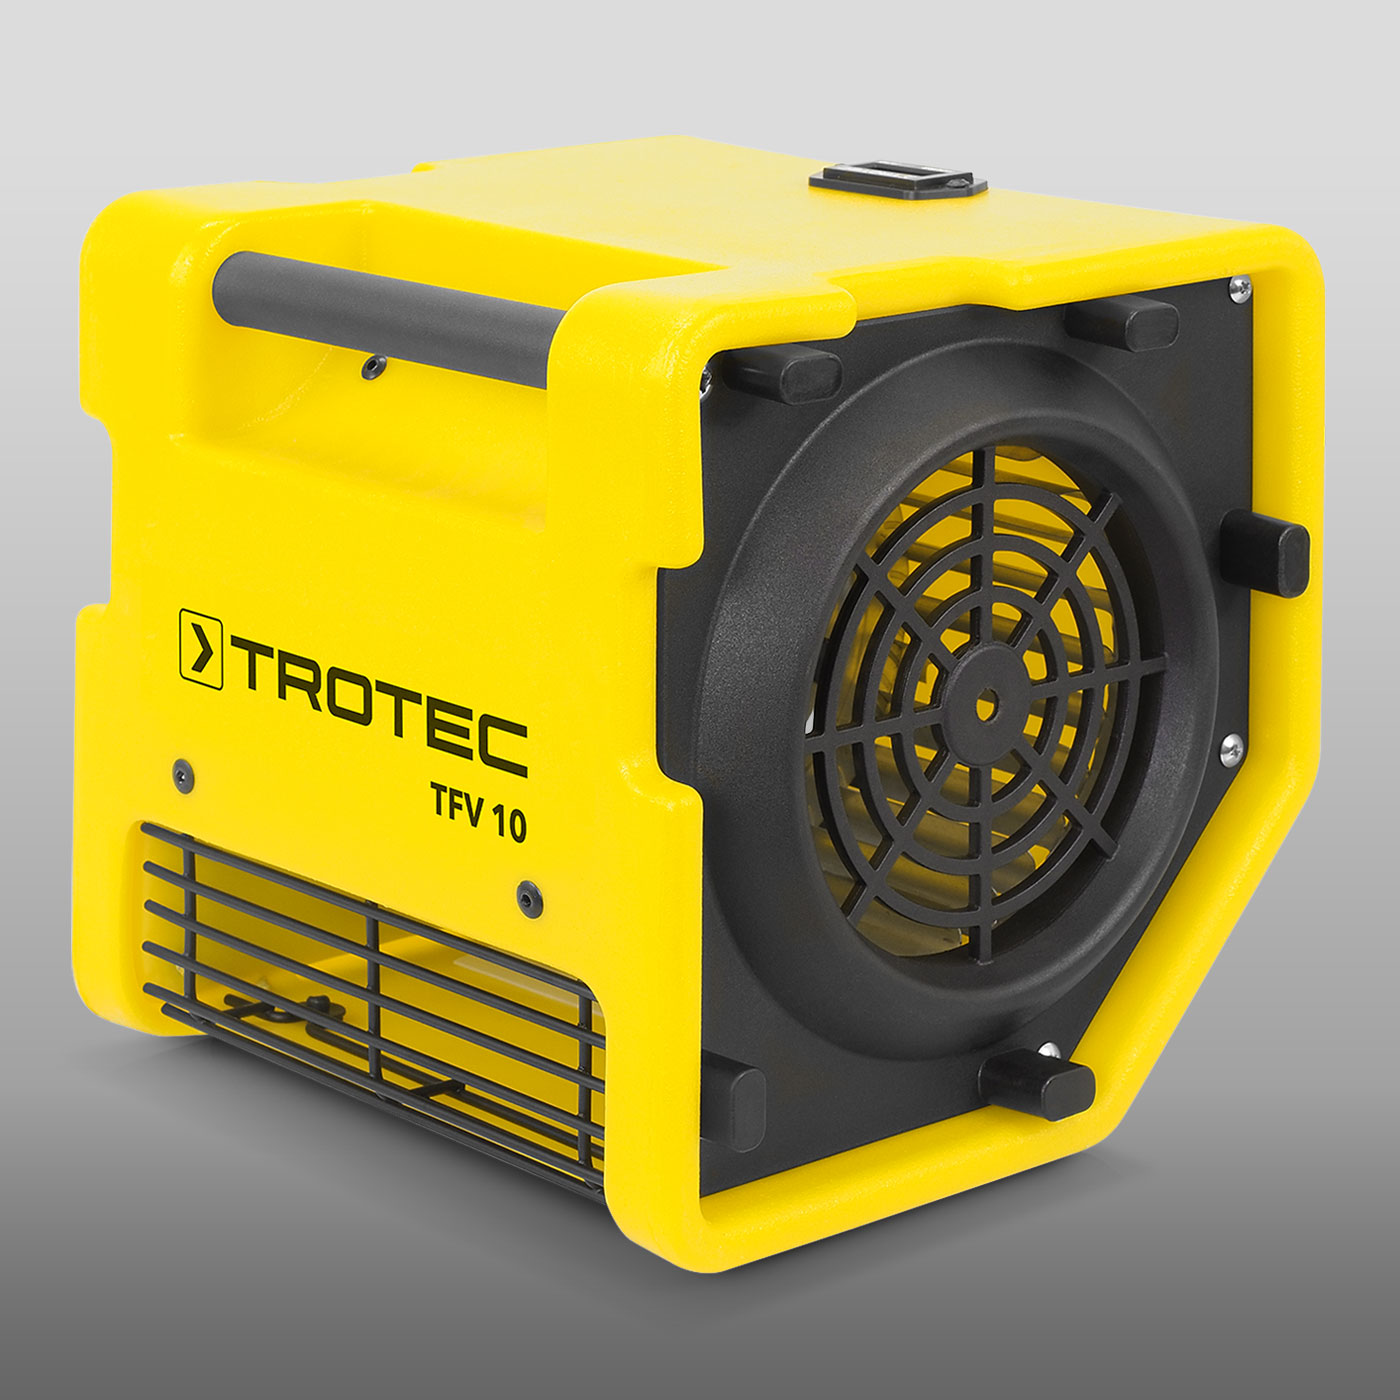 Професійний турбовентилятор TFV 10 від компанії Trotec